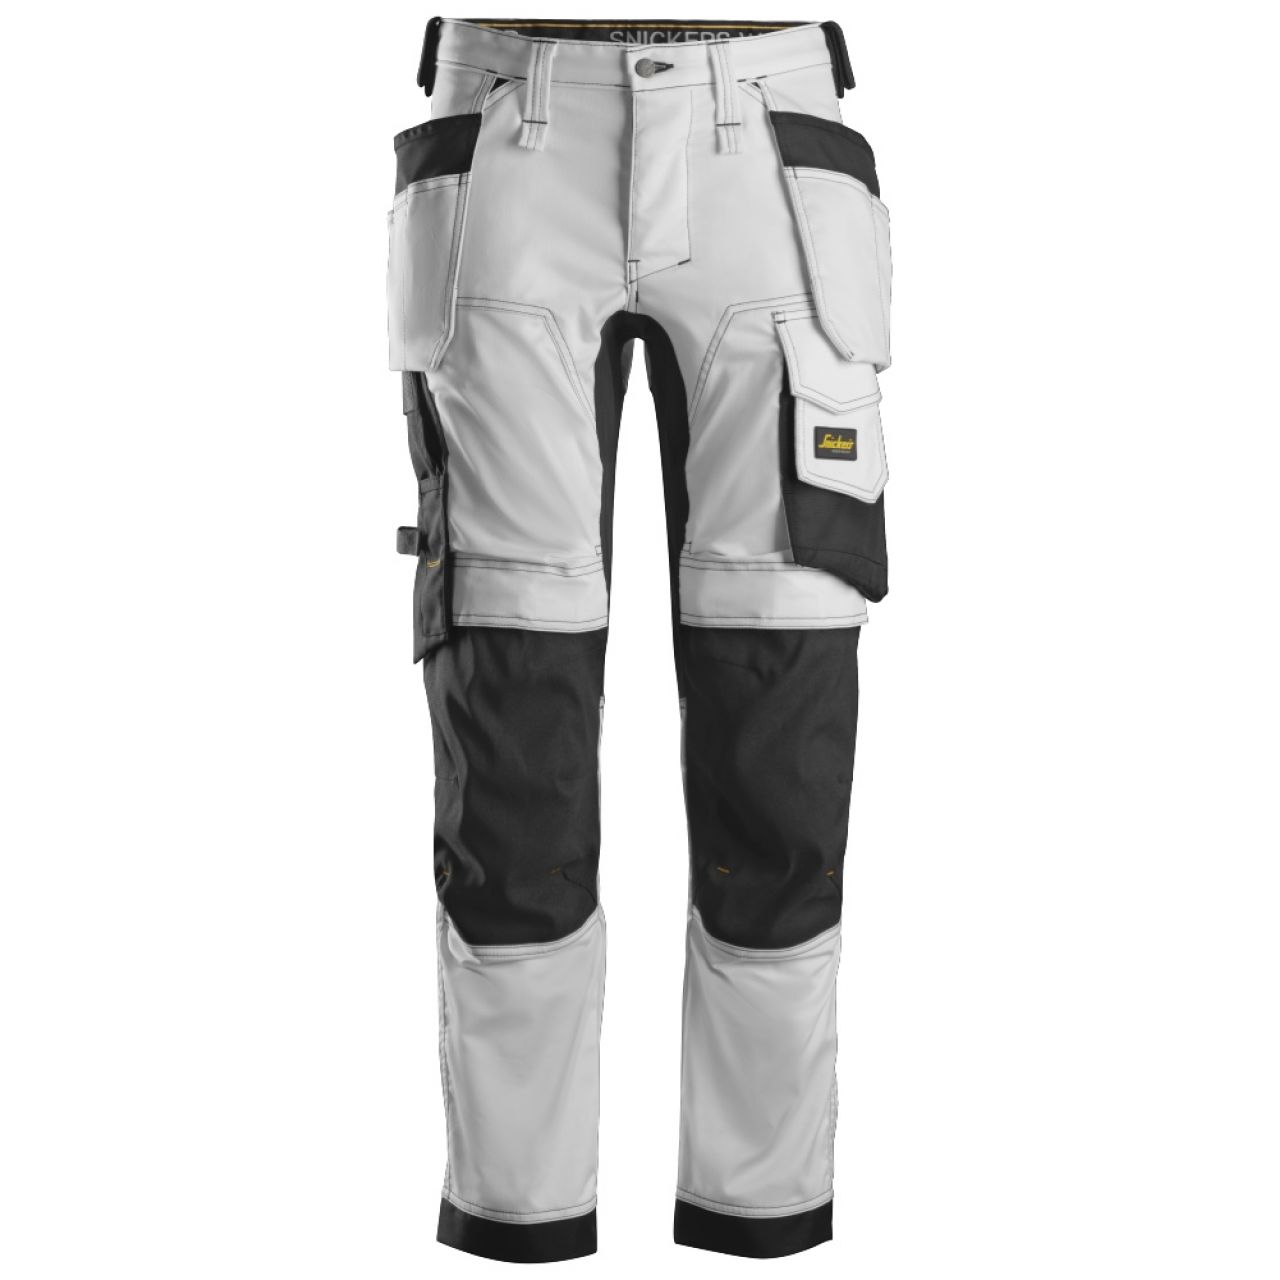 6241 Pantalones largos de trabajo elásticos con bolsillos flotantes AllroundWork blanco-negro talla 46